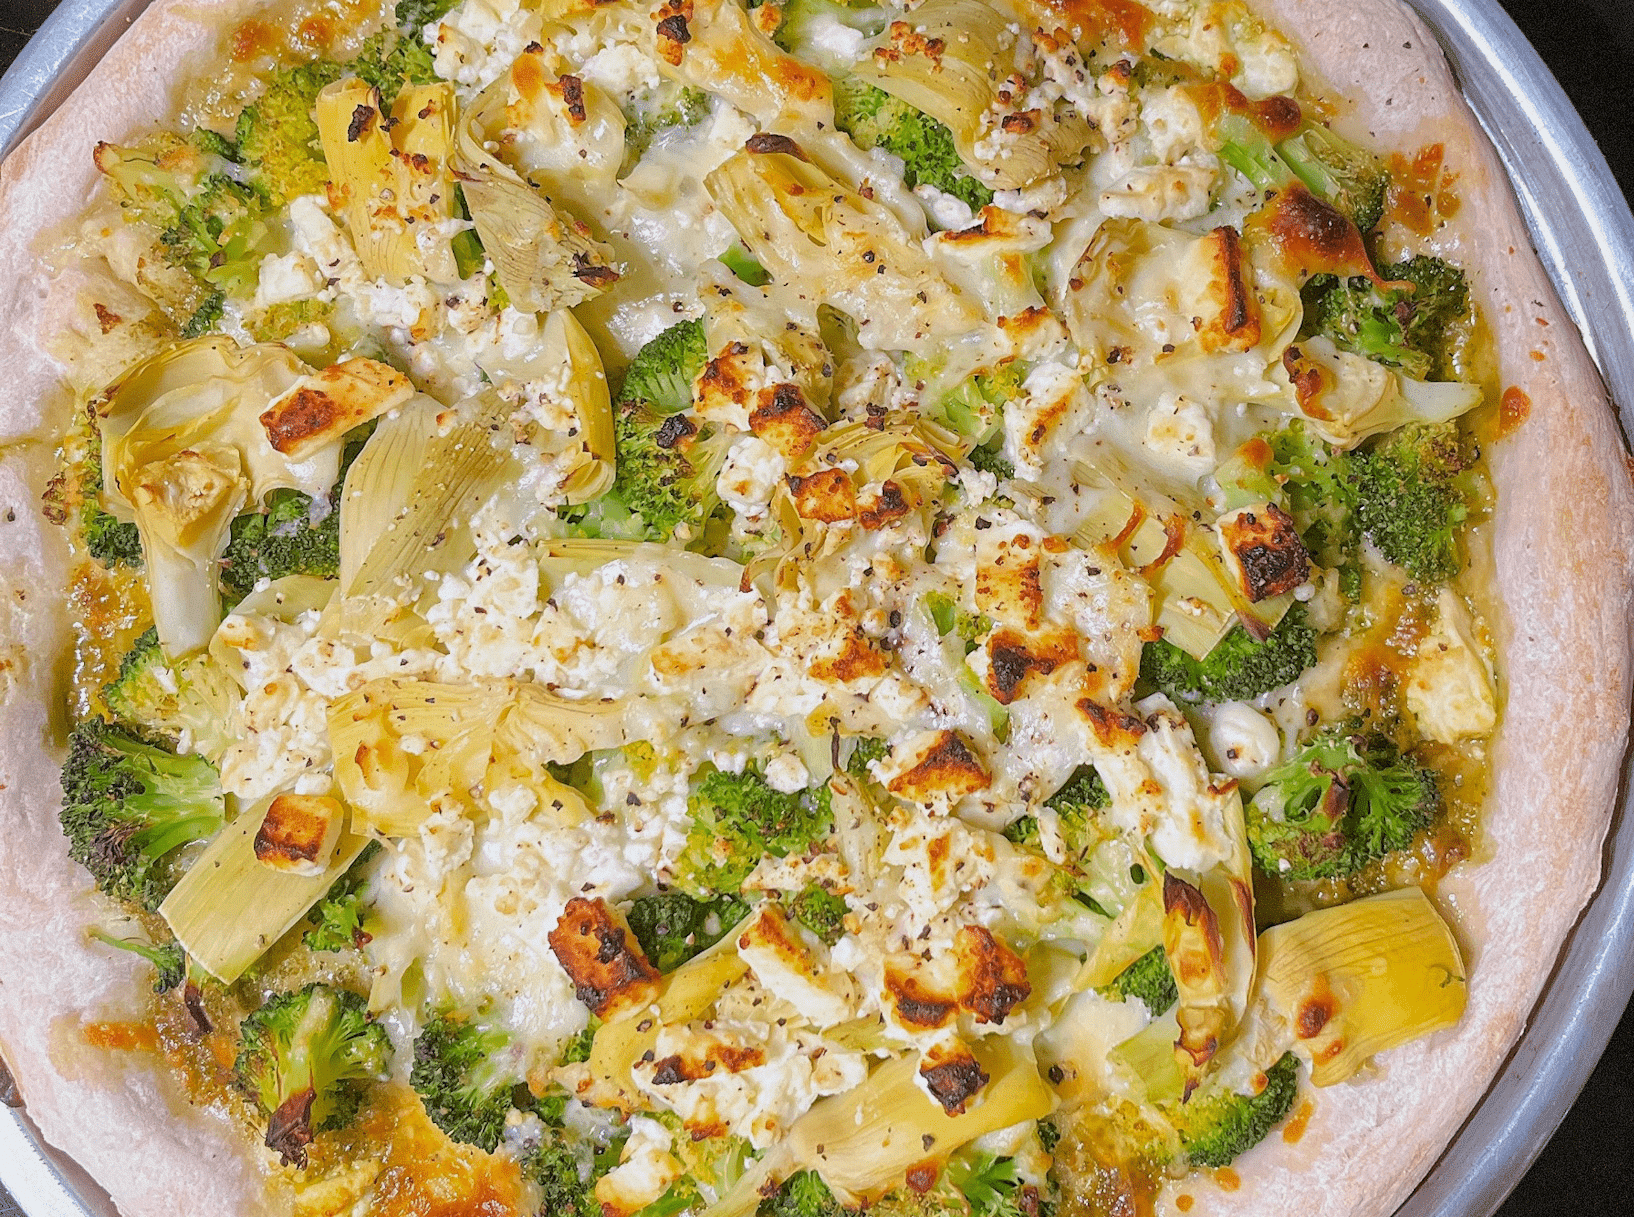 Green Pizza with Pesto, Feta, Artichokes, and Broccoli